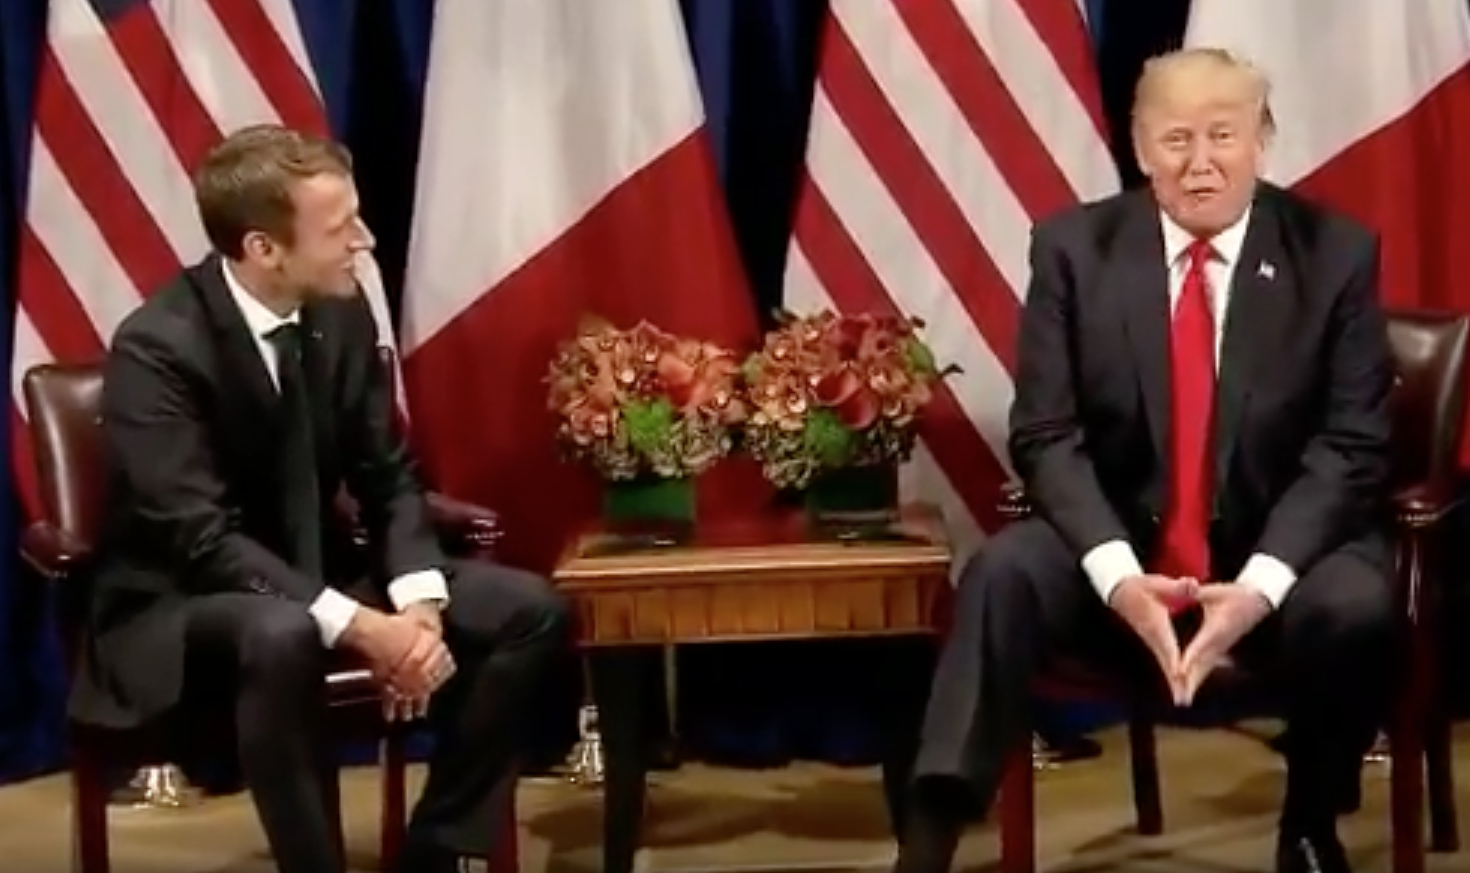 Emmanuel Macron and Donald Trump. 